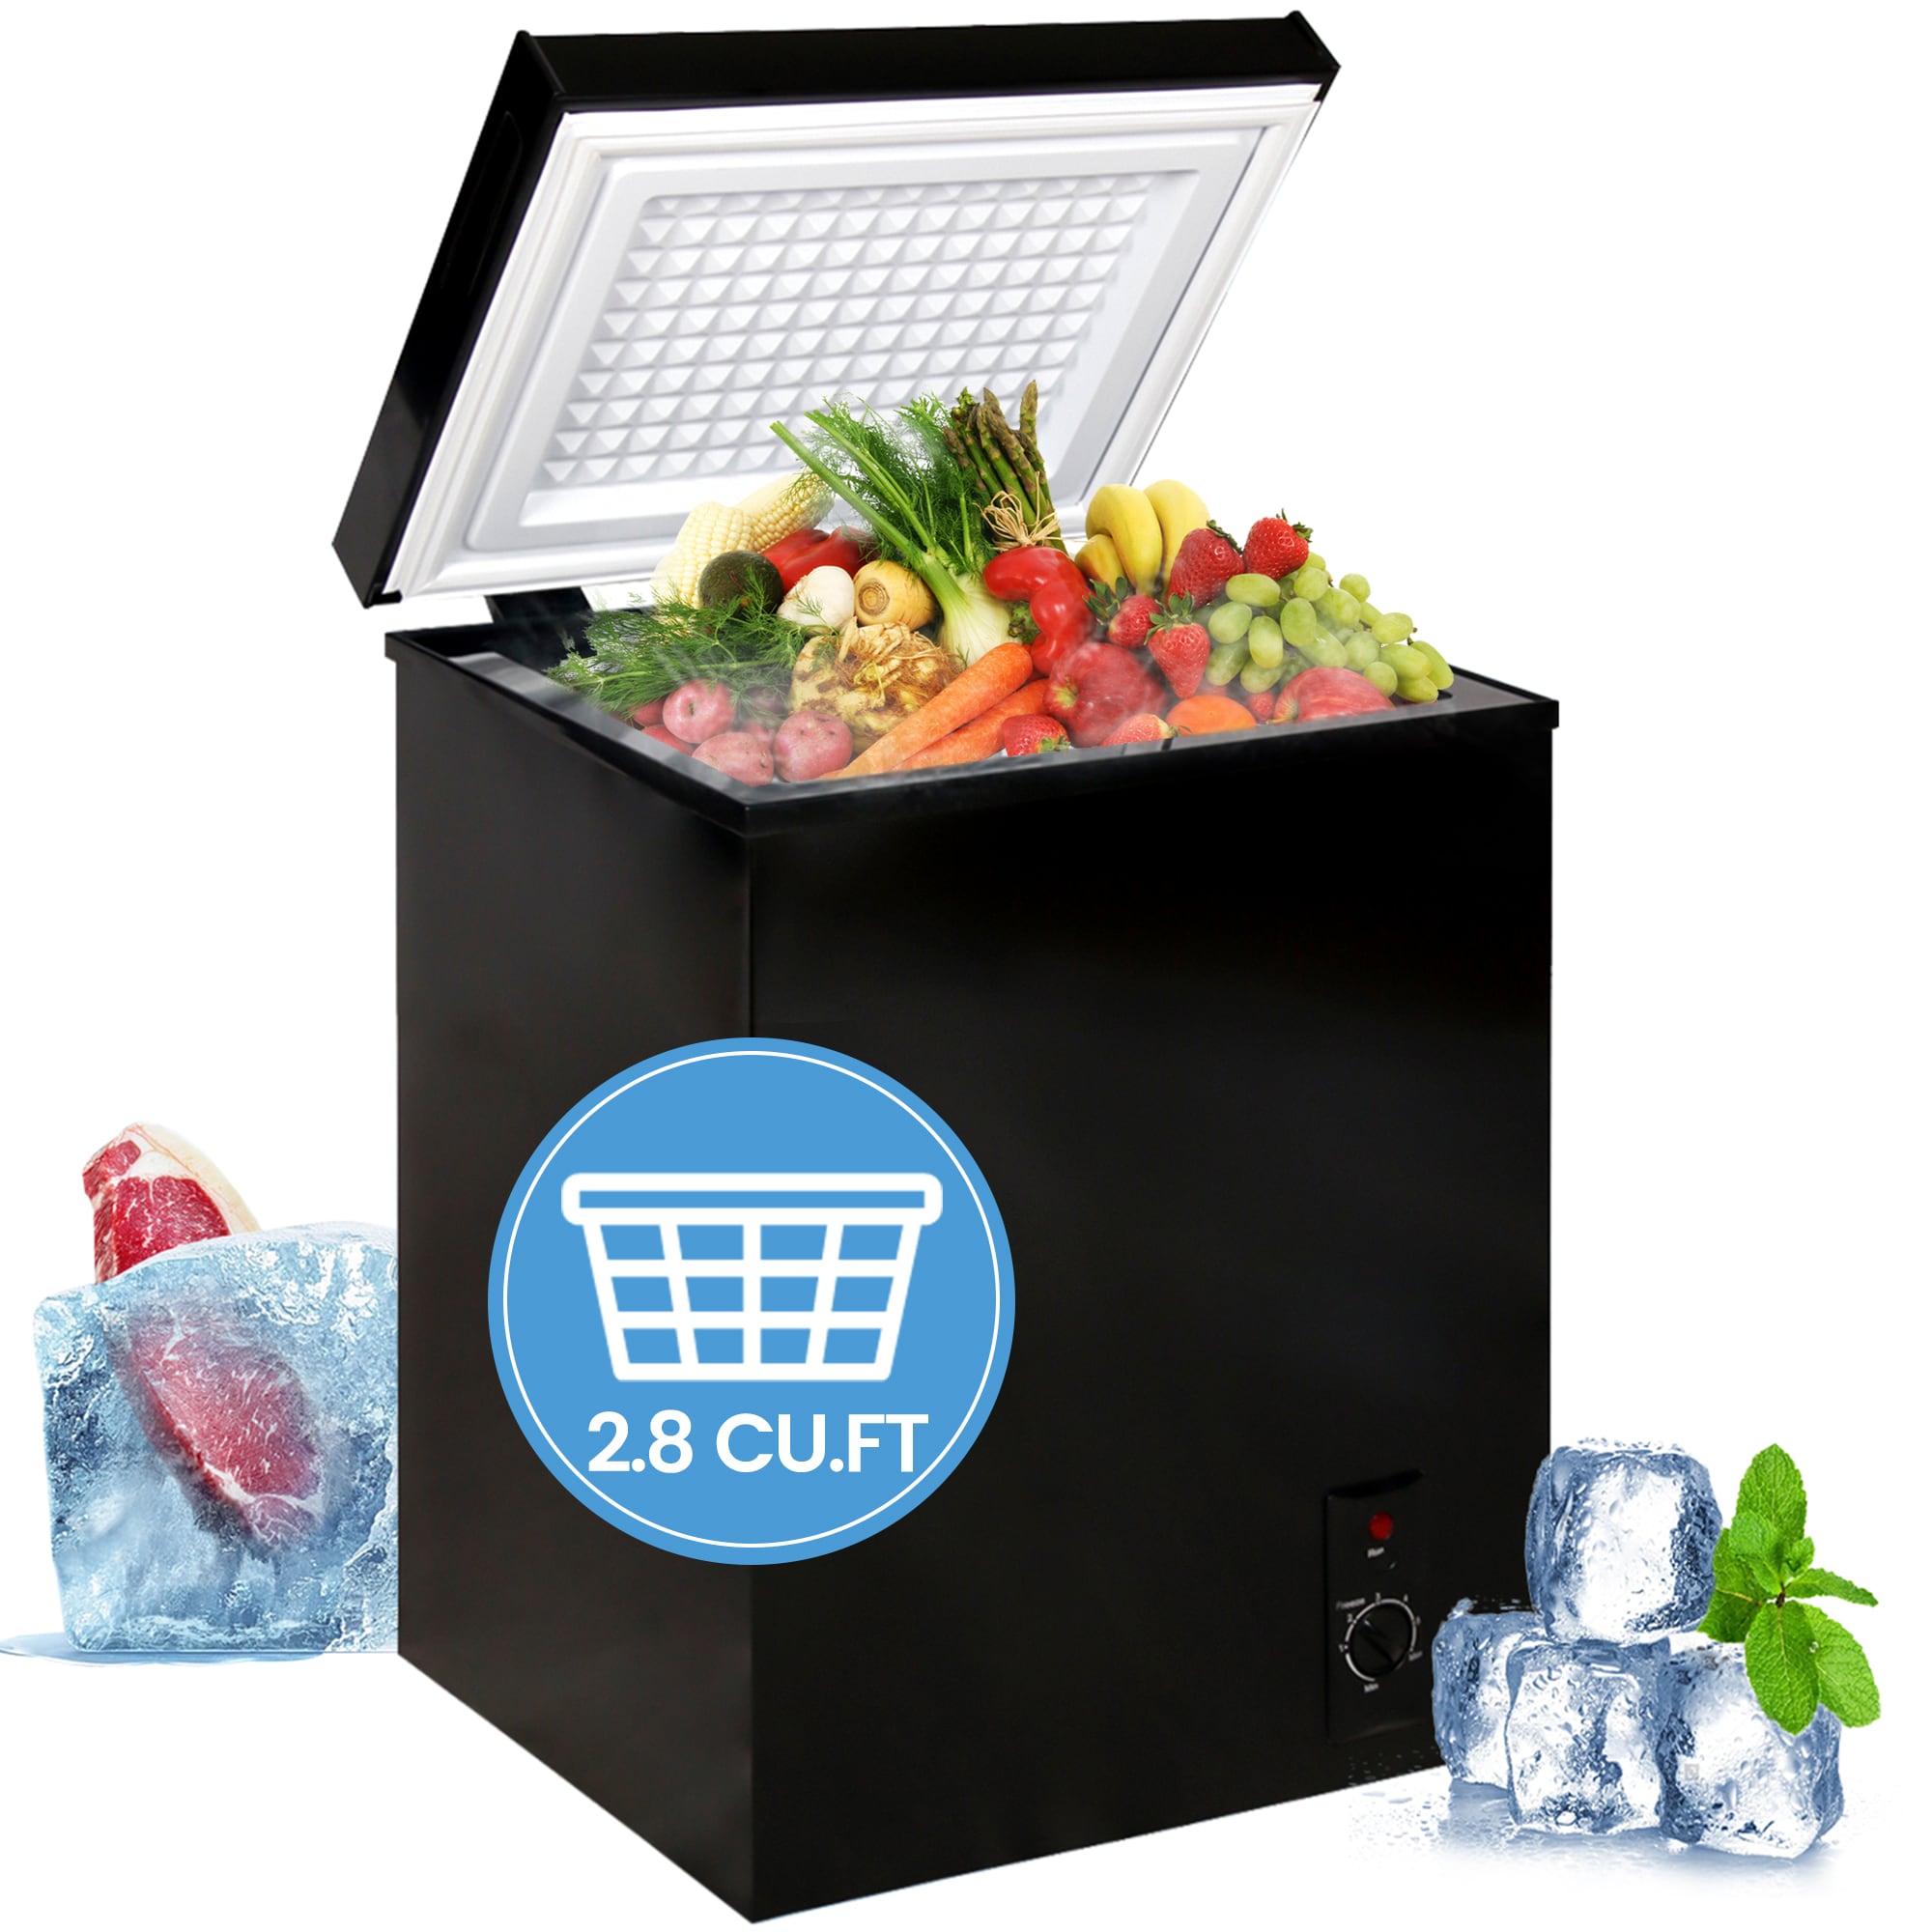 8 ft³ Chest Freezer - Premium Levella